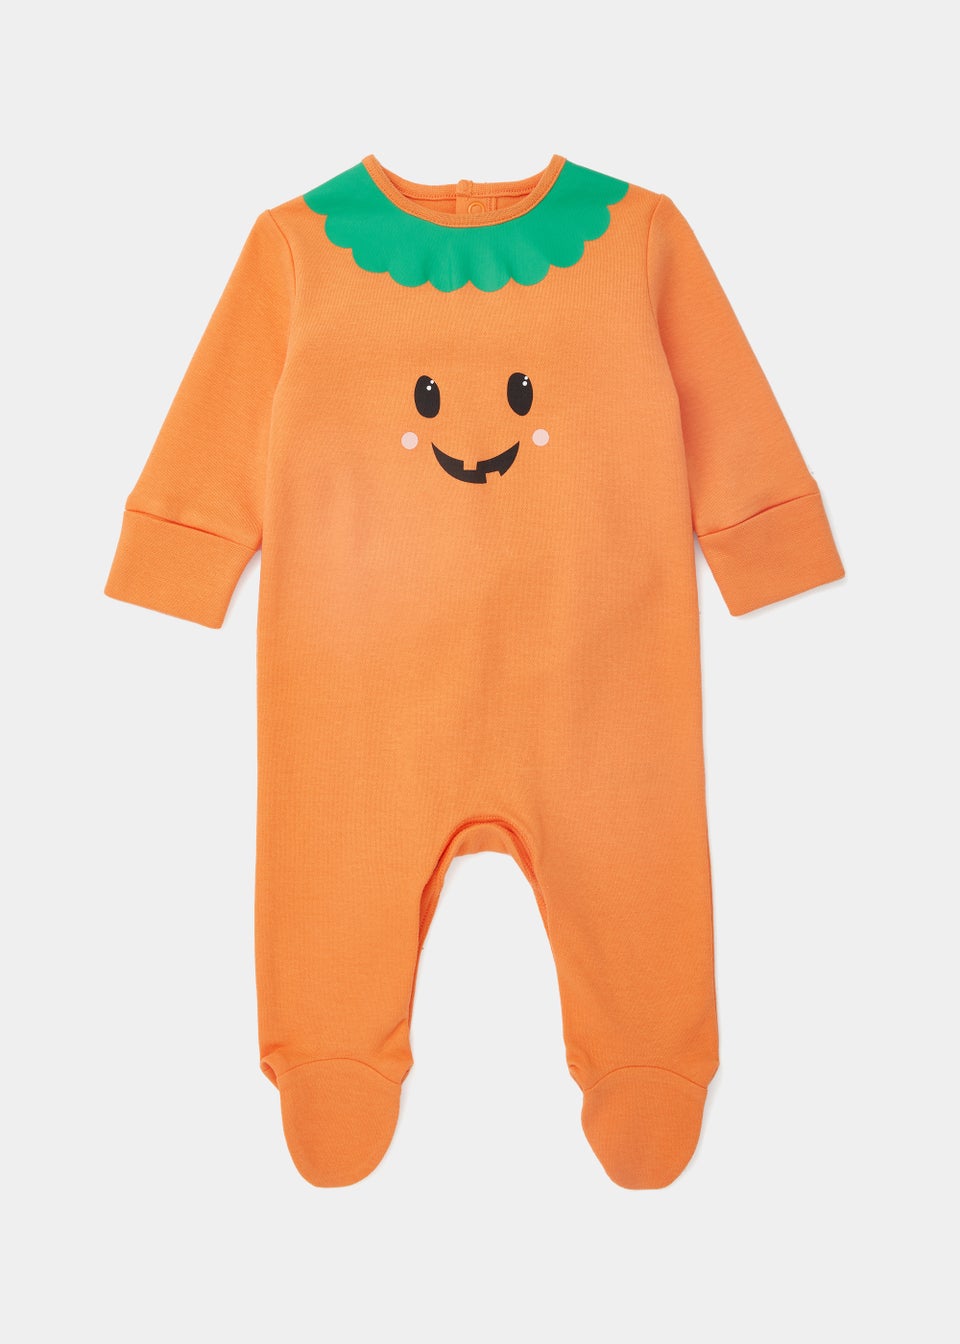 Baby Orange Pumpkin Print Sleepsuit (Newborn-18mths)